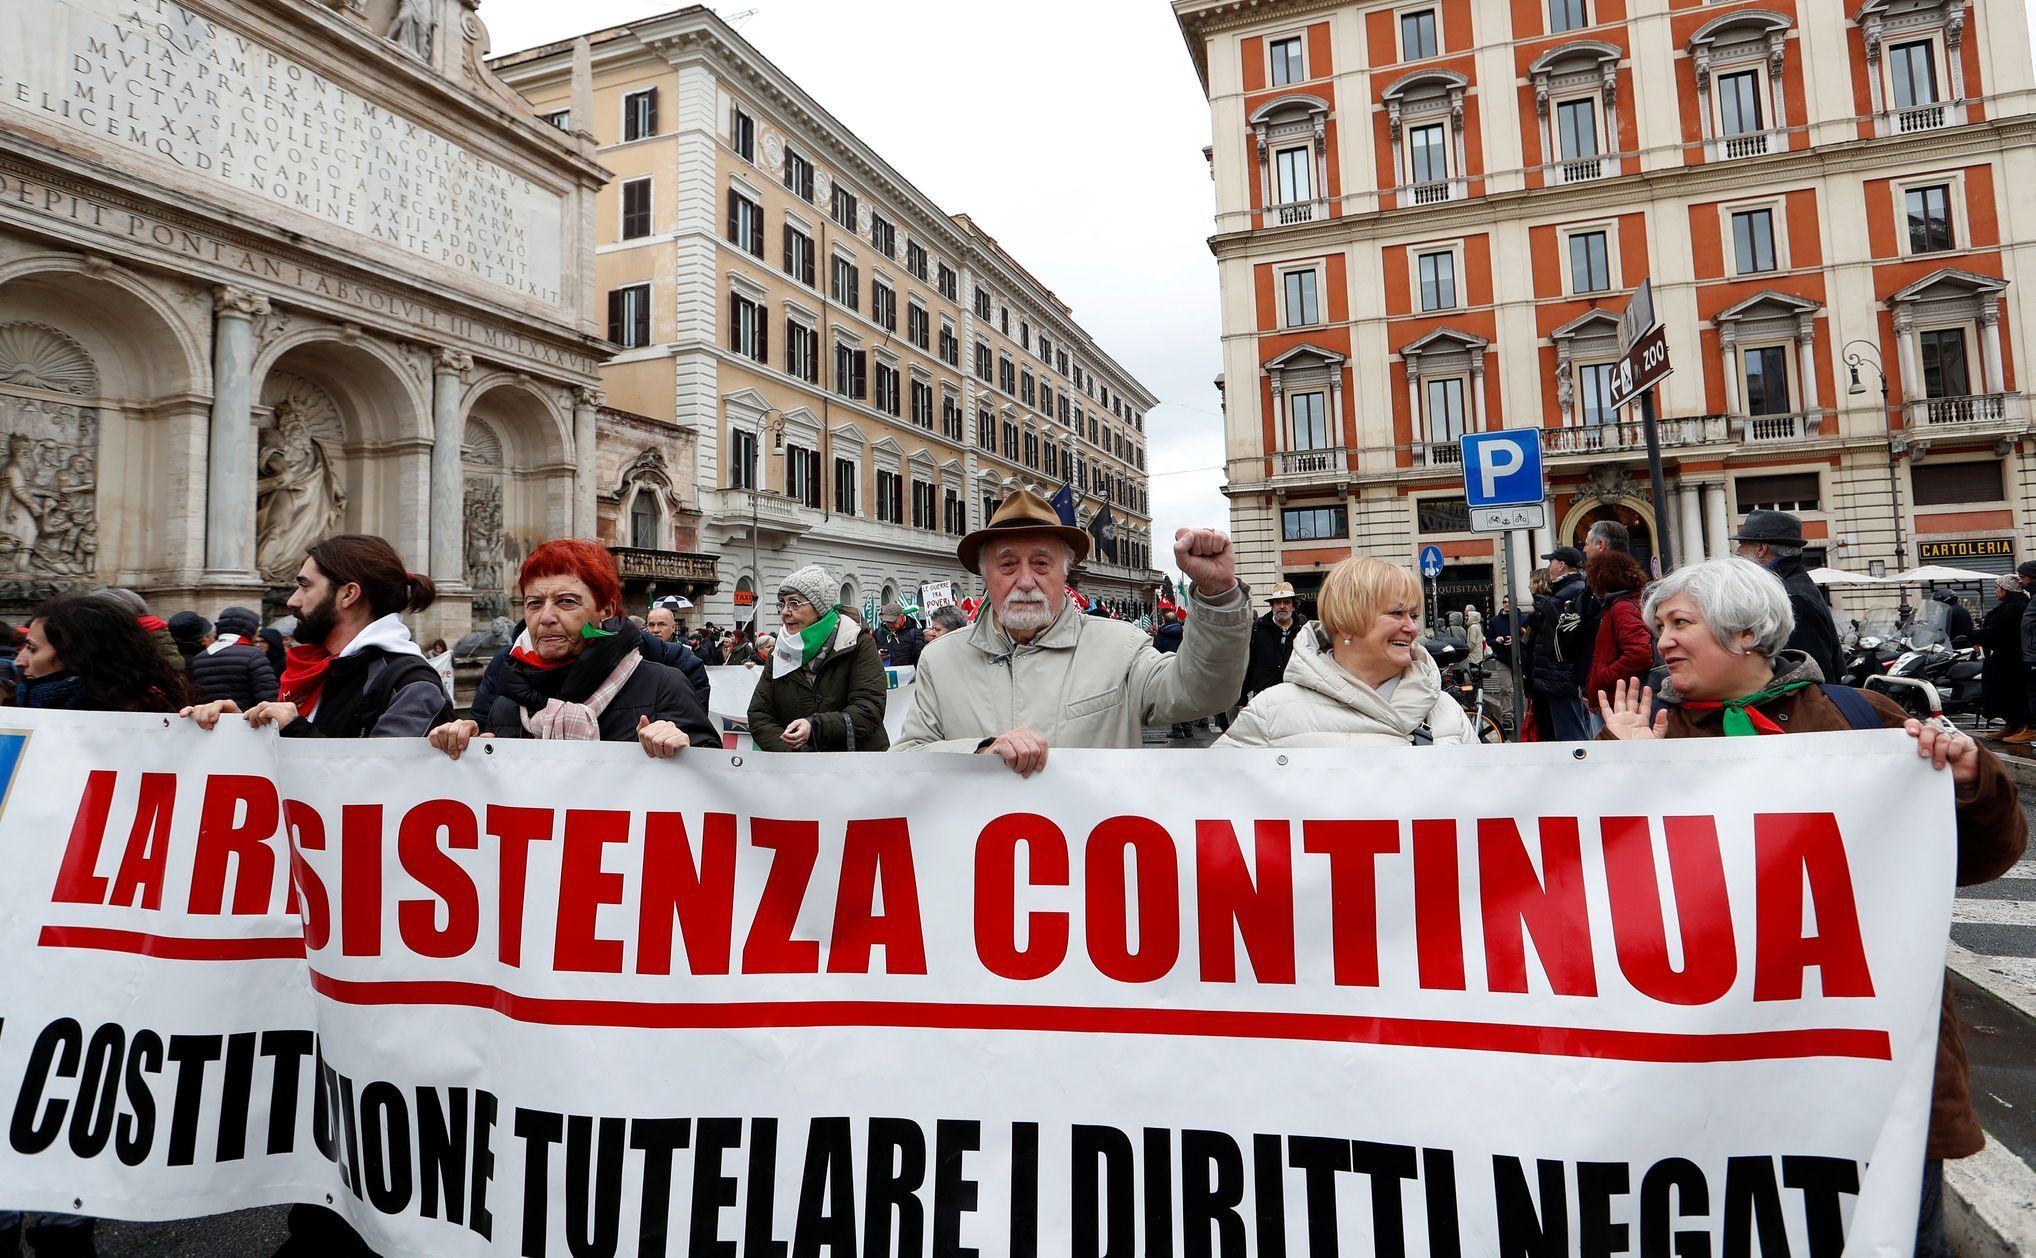 Pochod proti rasismu v Římě